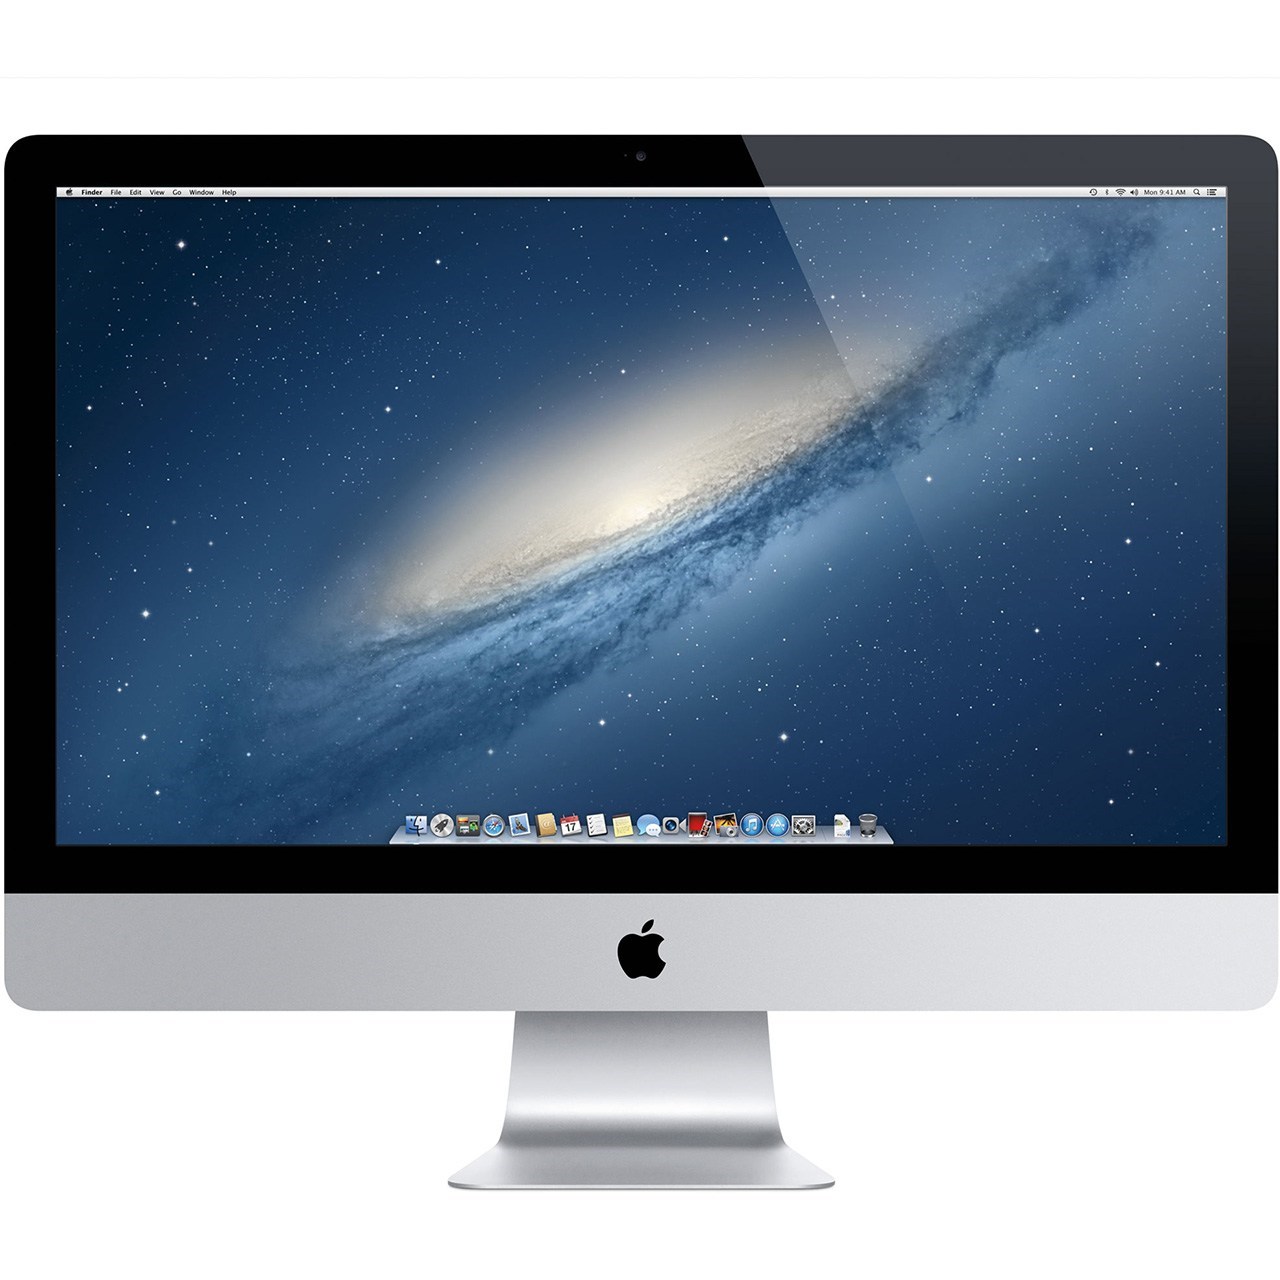 کامپیوتر همه کاره 21.5 اینچی اپل مدل iMac 2015 با صفحه نمایش رتینا 4K 0